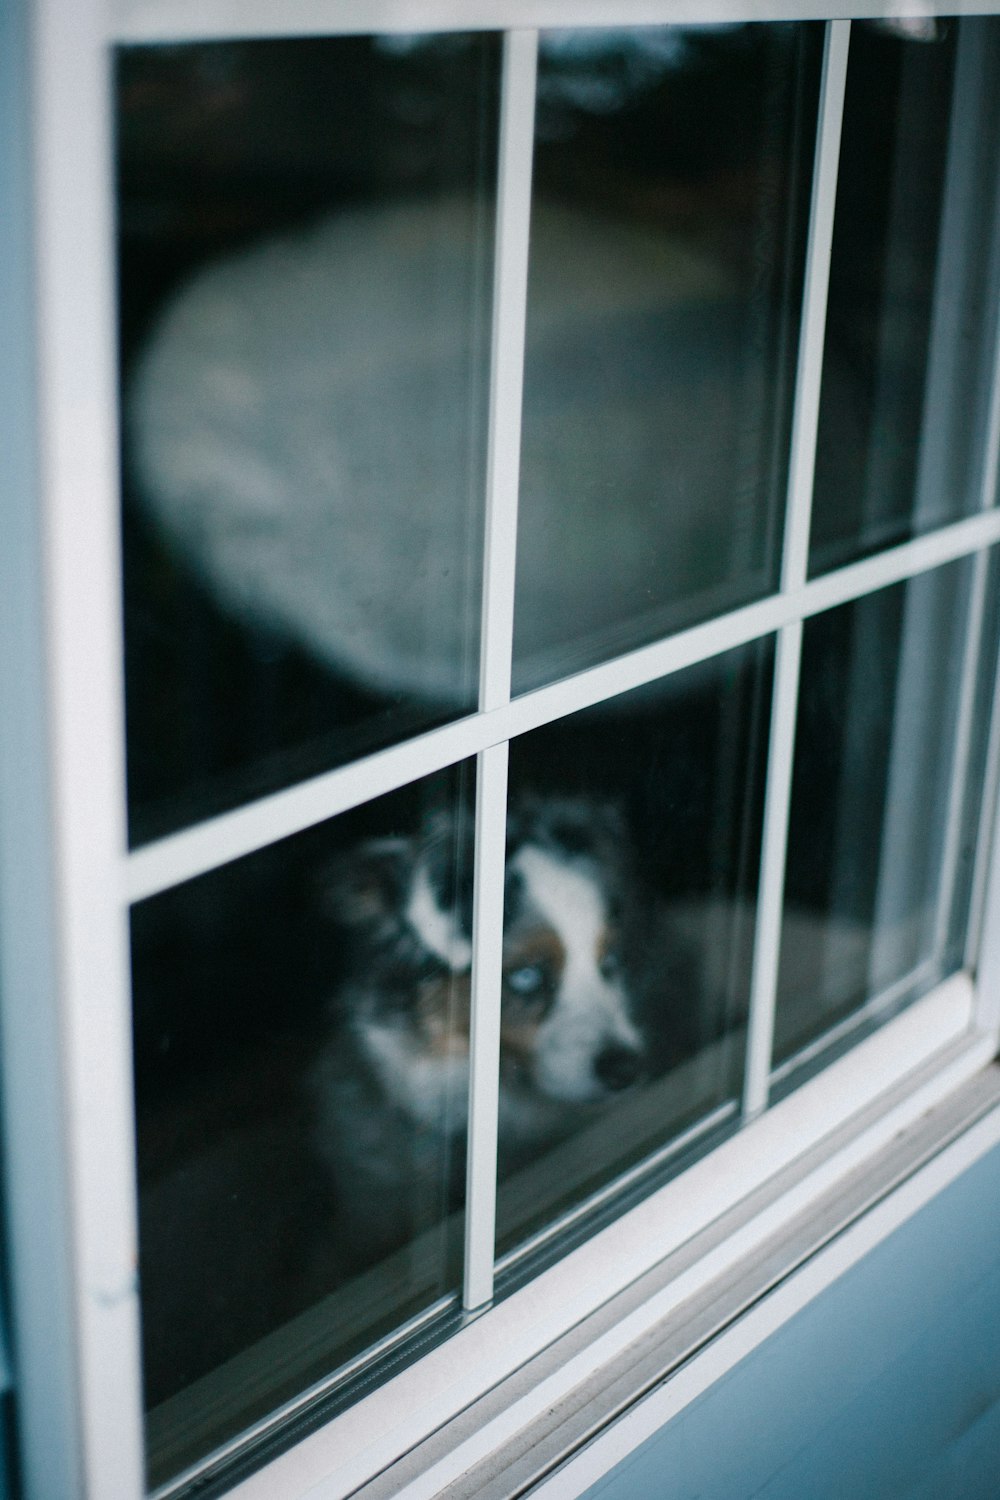 schwarz-weiß kurzbeschichteter Hund am Fenster